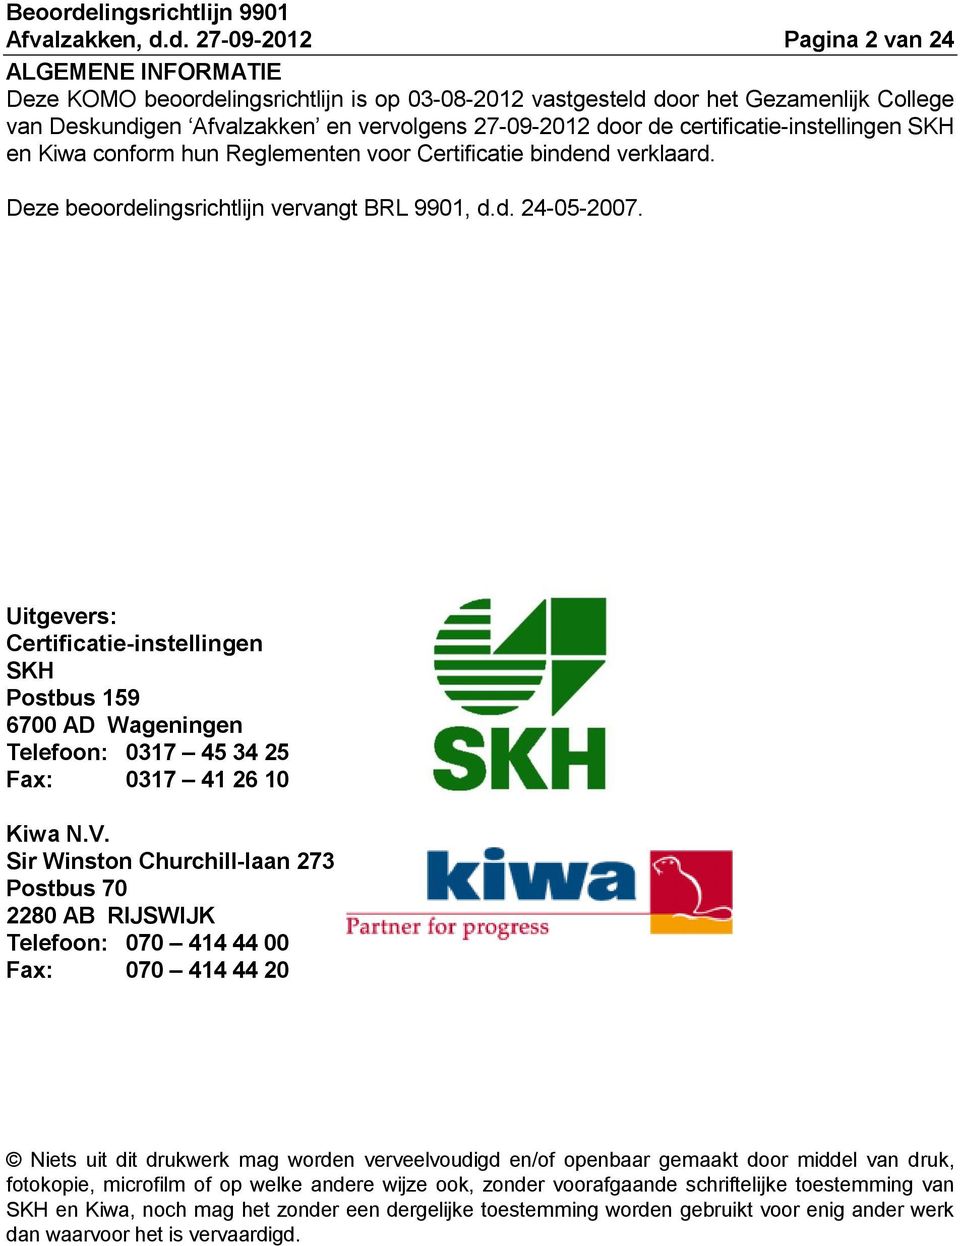 de certificatie-instellingen SKH en Kiwa conform hun Reglementen voor Certificatie bindend verklaard. Deze beoordelingsrichtlijn vervangt BRL 9901, d.d. 24-05-2007.